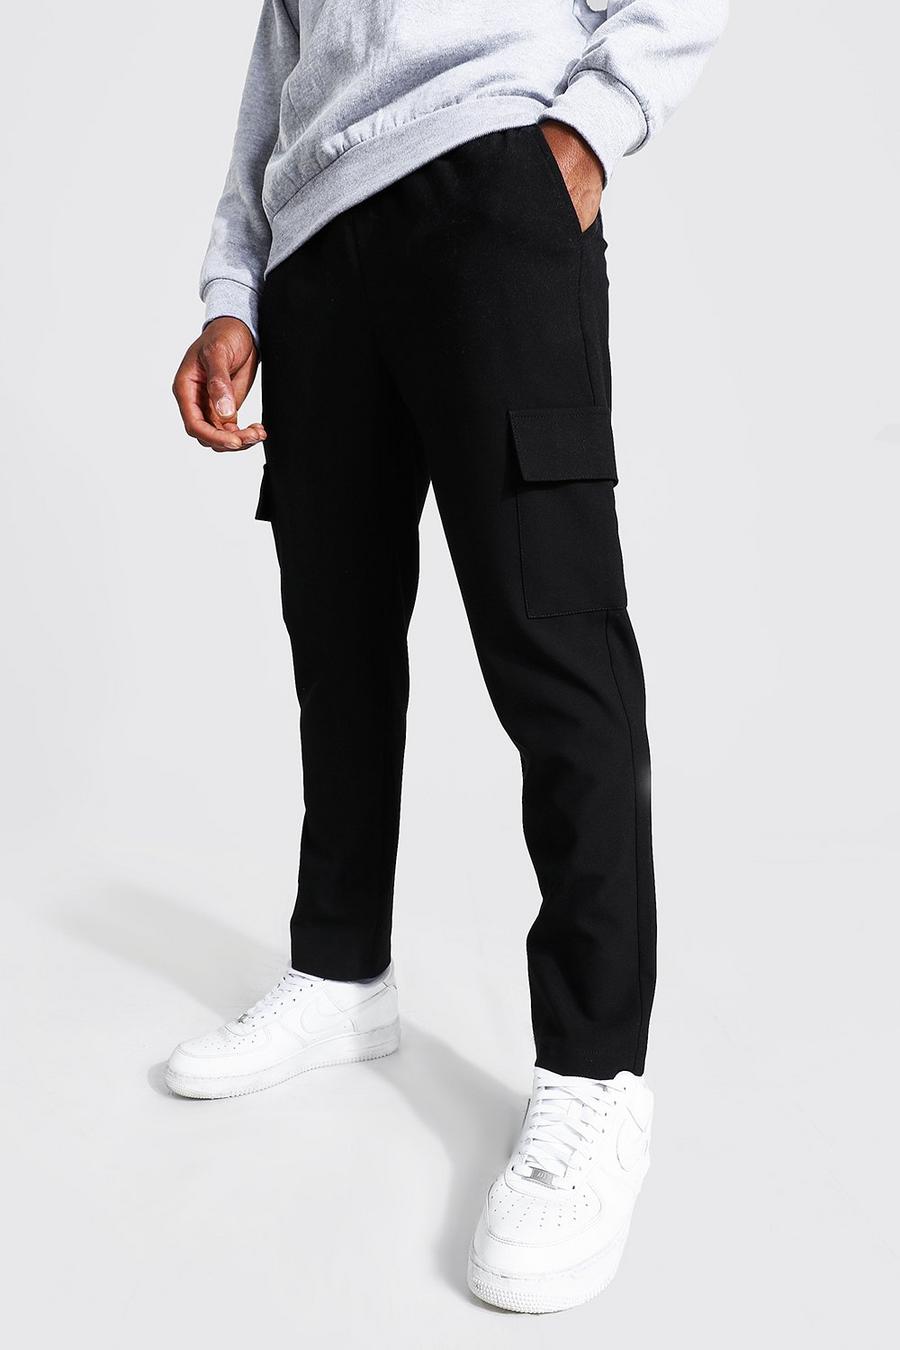 שחור black מכנסי ריצה סקיני קרופ אלגנטיים חלקים בסגנון דגמ'ח